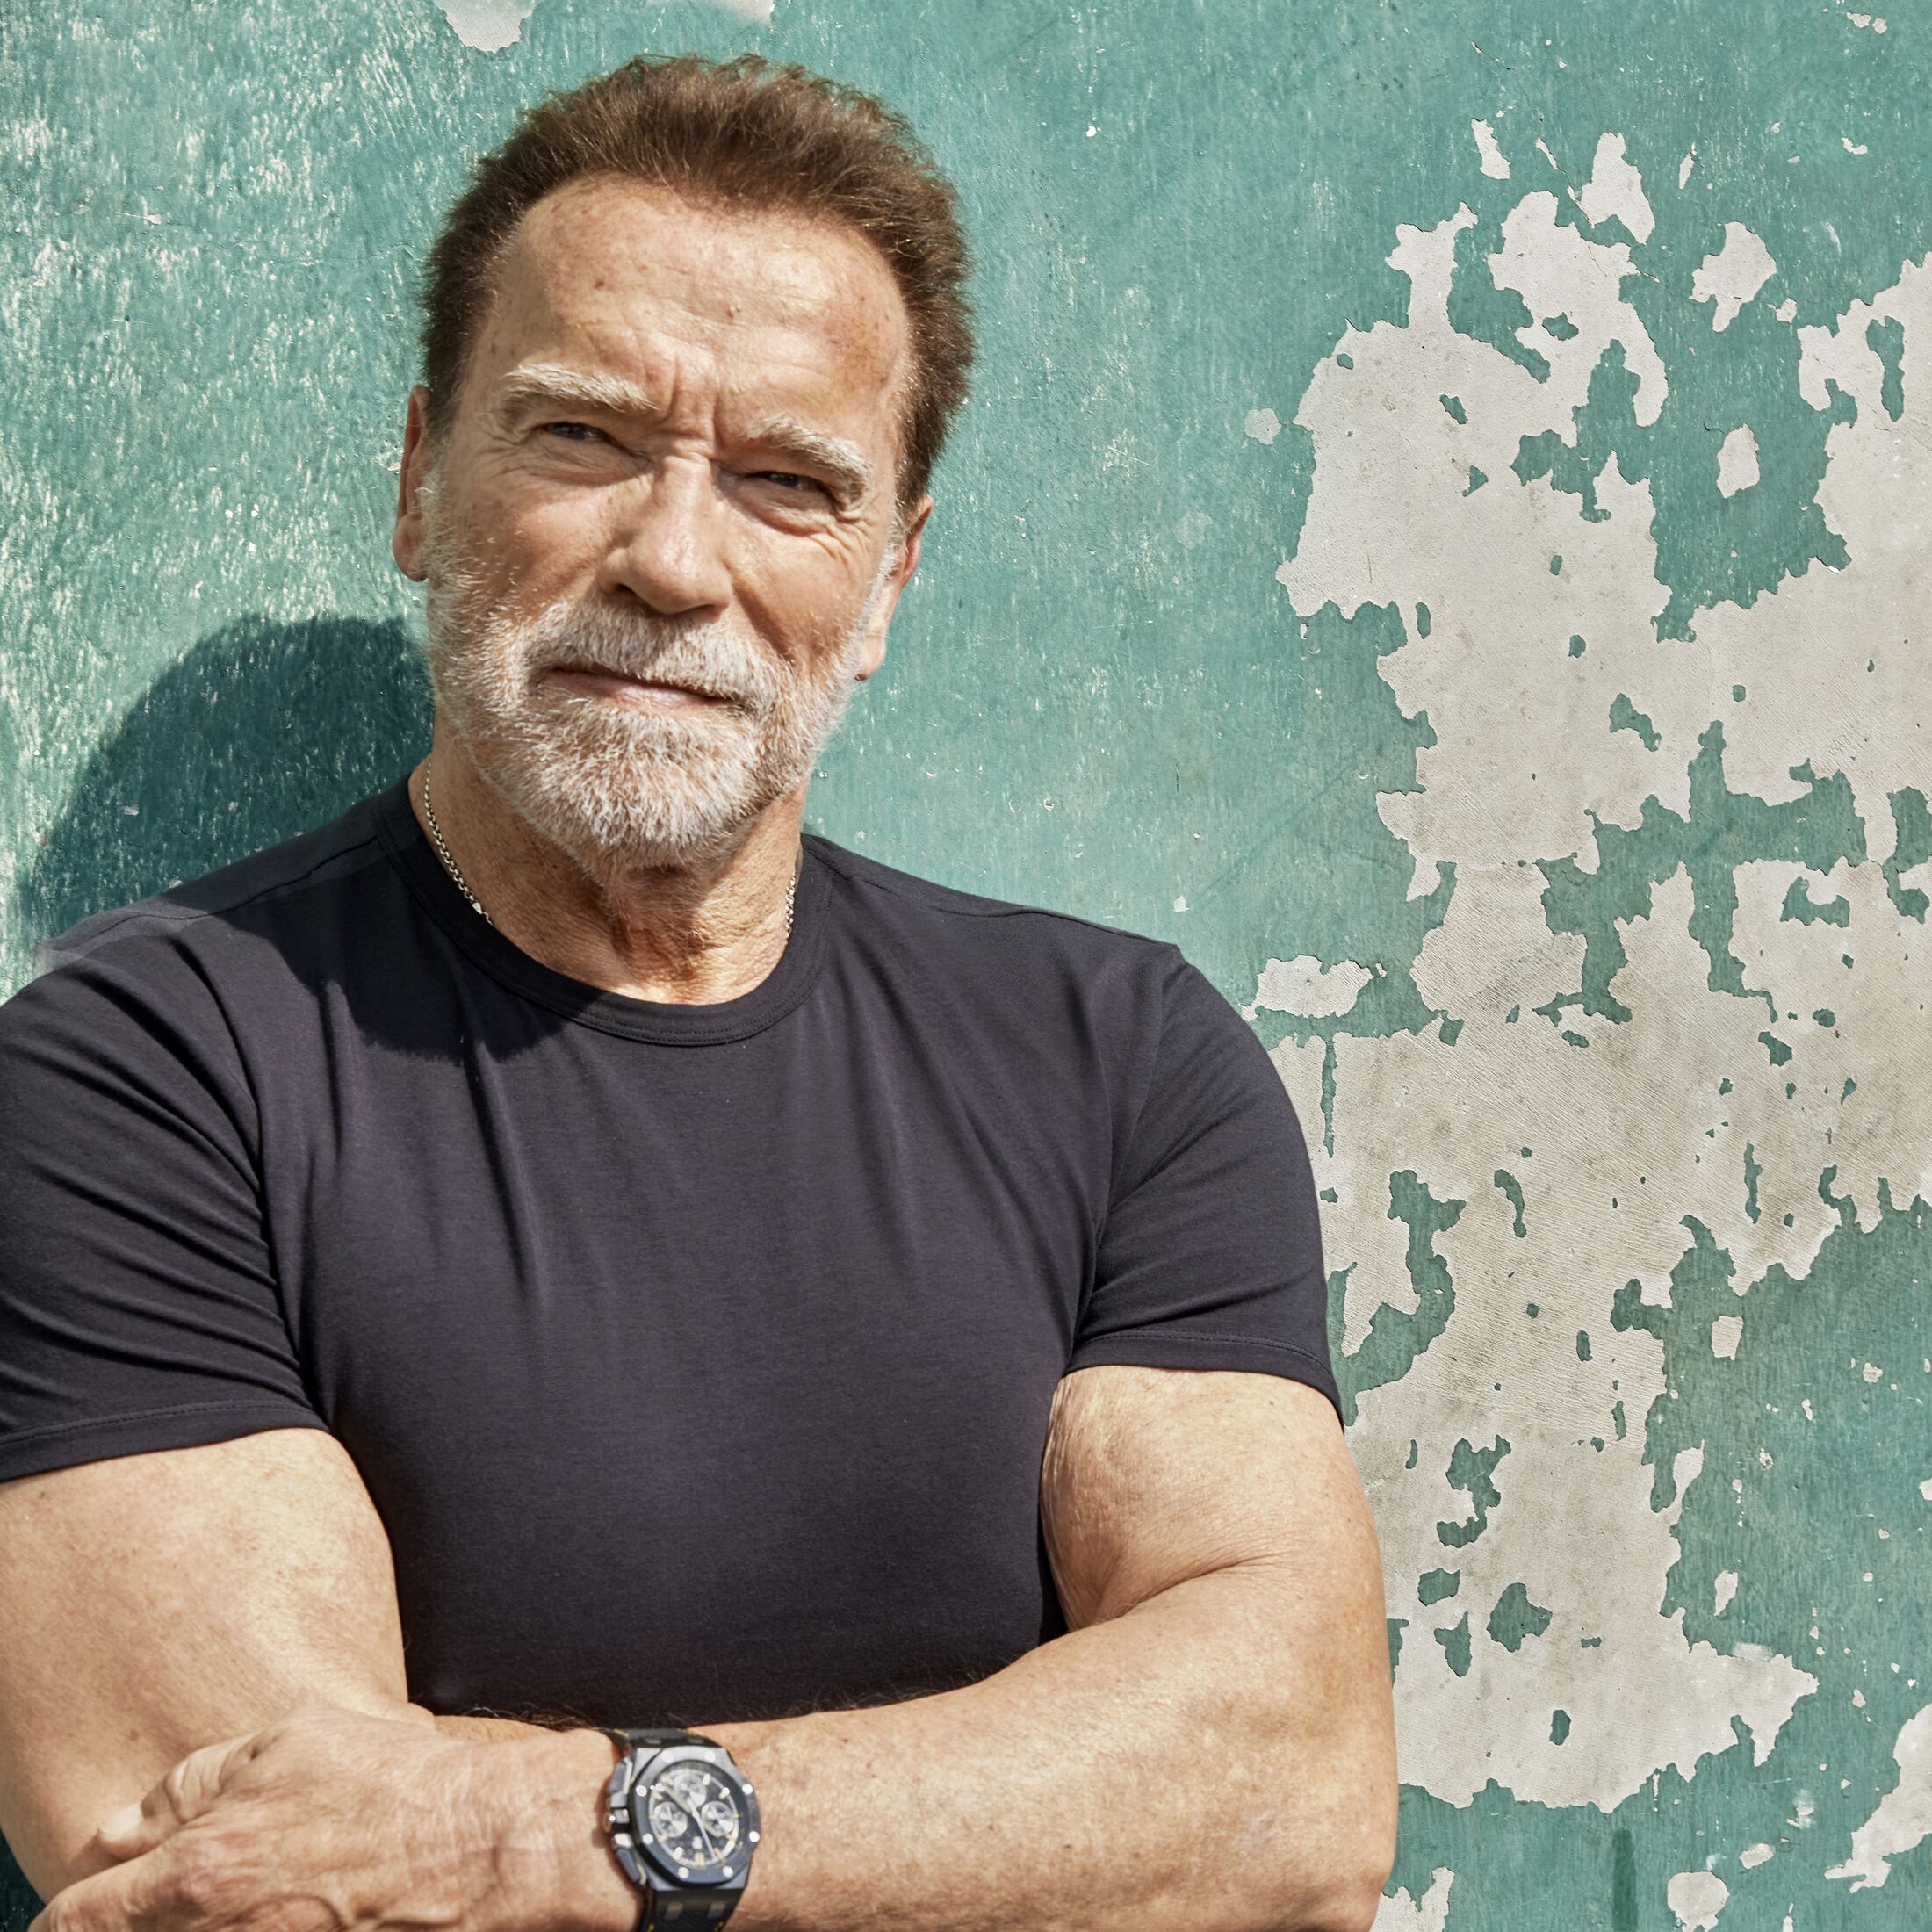 https://imgr1.menshealth.de/Arnold-Schwarzenegger-hat-alles-erreicht-heute-kommt-es-ihm-auf-die-richtige-Message-und-ein-gesundes-Training-an-jsonLd1x1-4e1bd9c0-173627.jpg